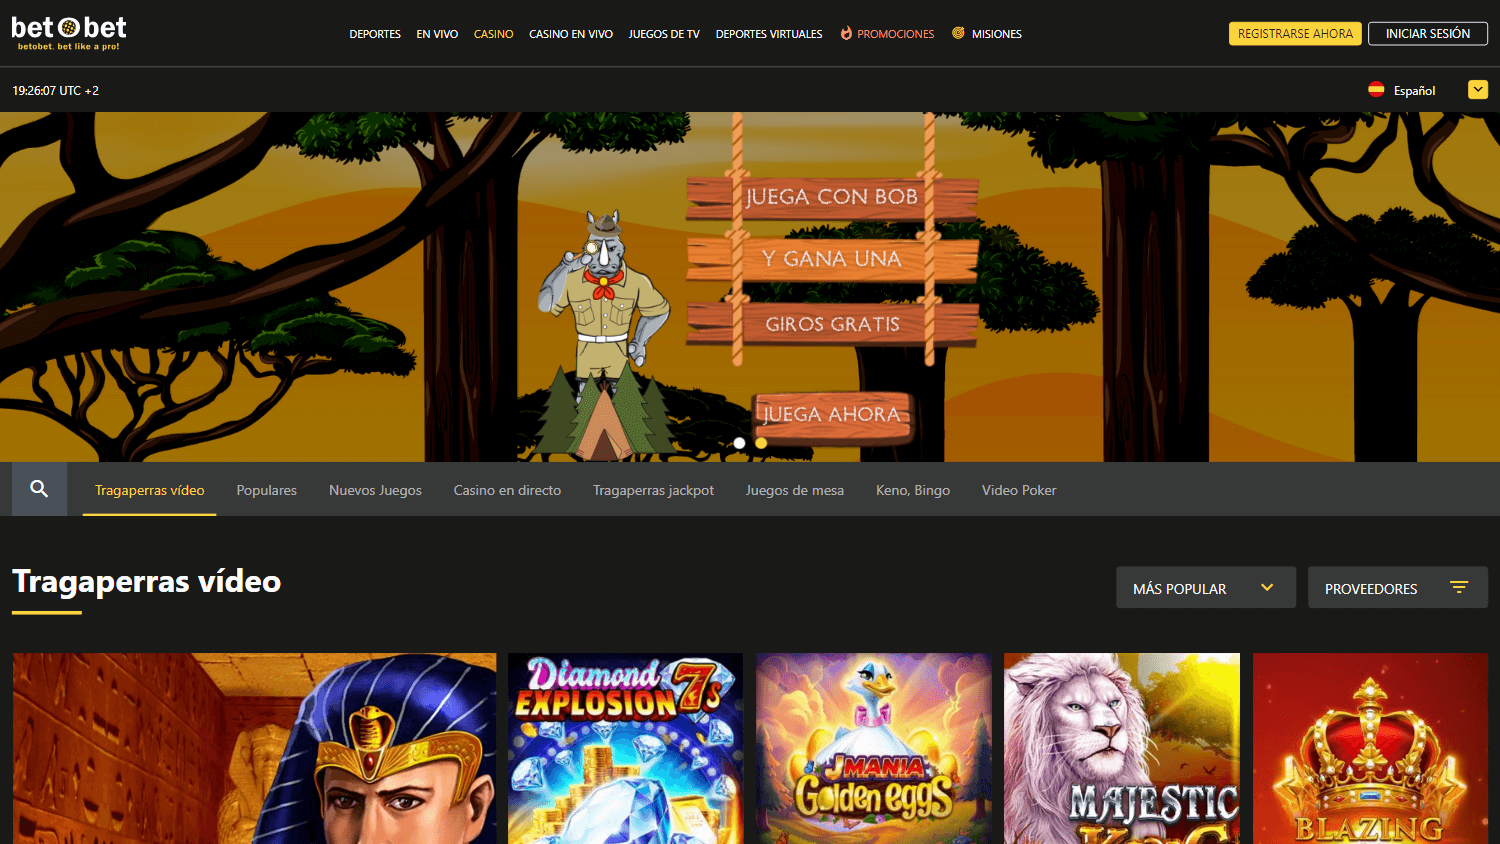 lucky_bandit_casino_homepage_desktop